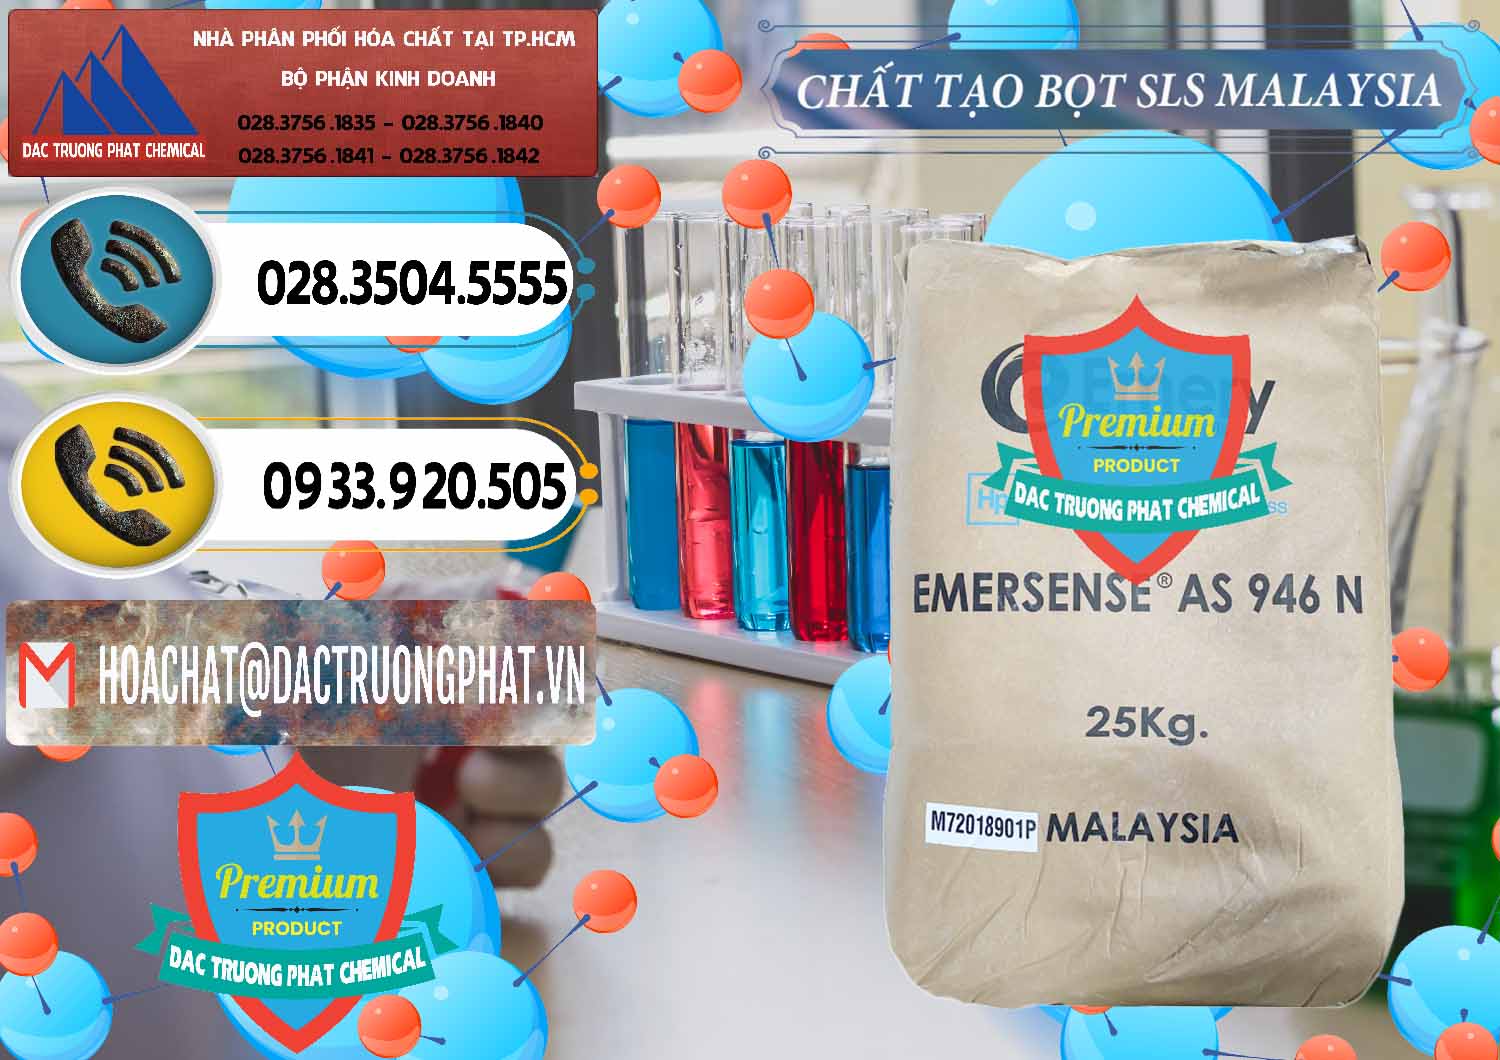 Chuyên cung ứng & bán Chất Tạo Bọt SLS Emery - Emersense AS 946N Mã Lai Malaysia - 0423 - Nhà cung cấp - phân phối hóa chất tại TP.HCM - hoachatdetnhuom.vn